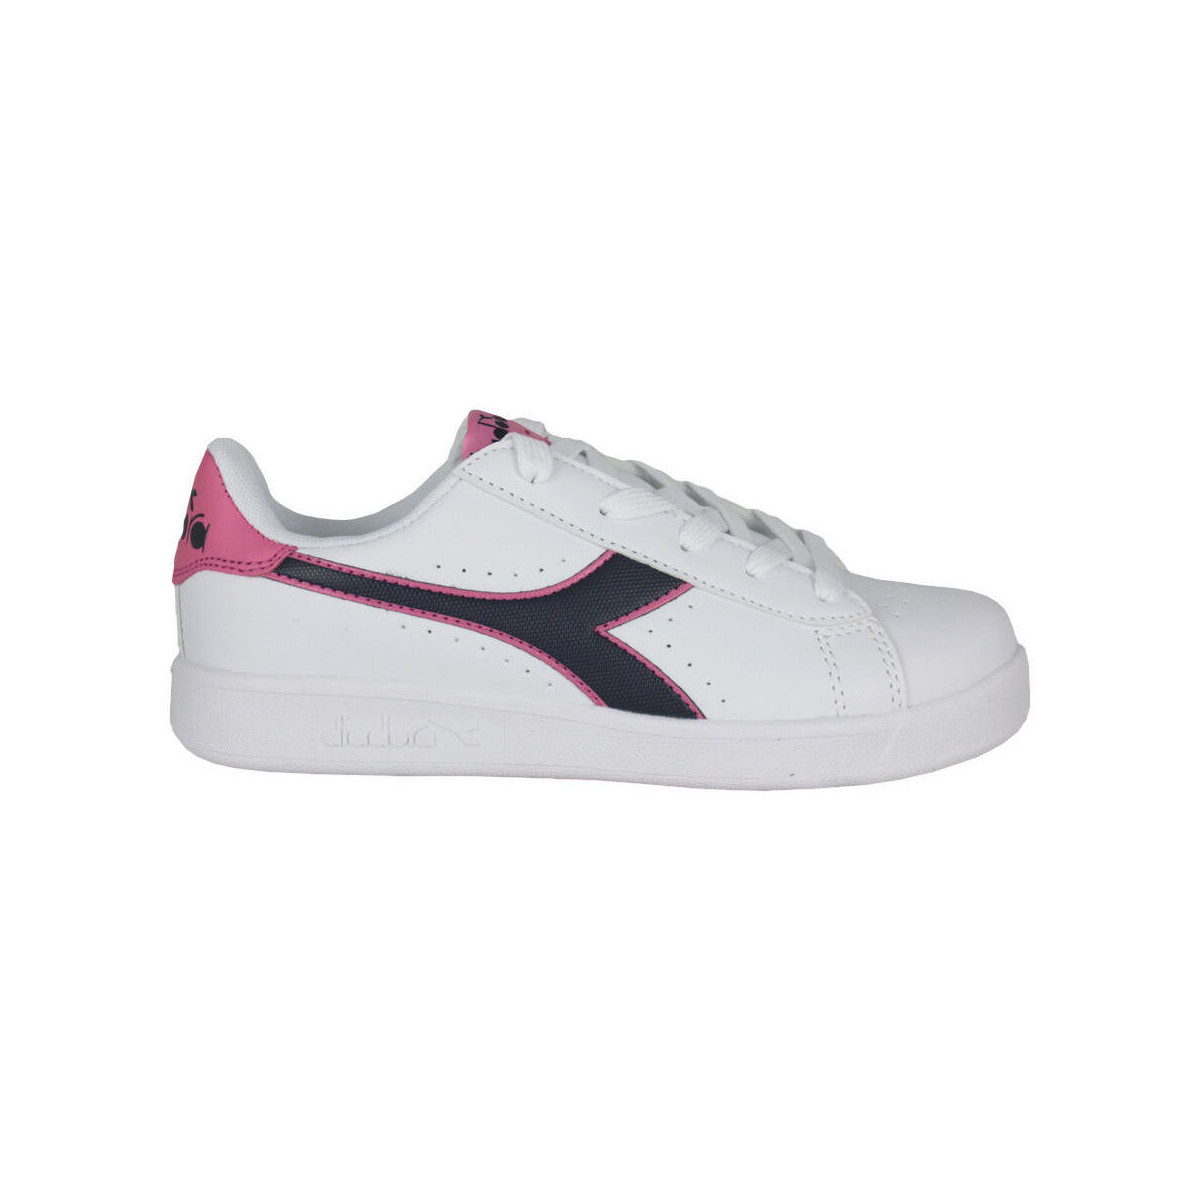 Παπούτσια Παιδί Sneakers Diadora 101.173323 01 C8593 White/Black iris/Pink pas Άσπρο